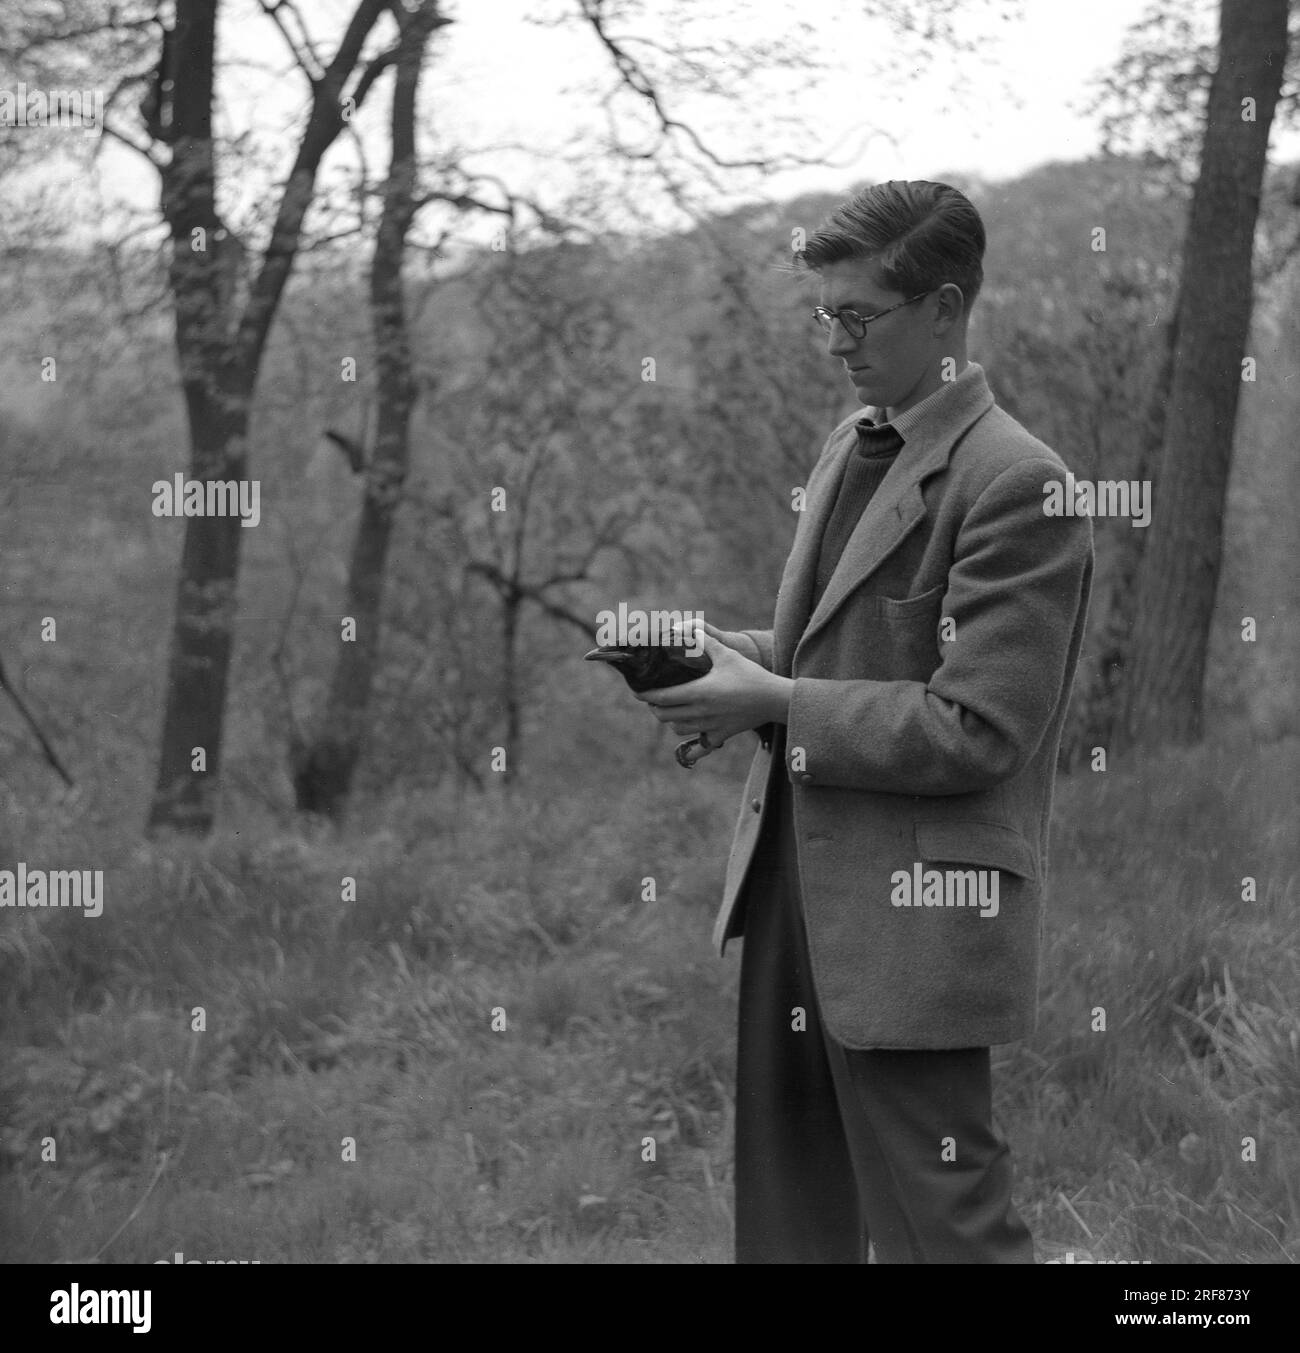 1950er Jahre, historisch, ein Mann in einer Sportjacke in einem bewaldeten Hügel stehend mit einer Amsel, möglicherweise verletzt, England, Großbritannien. Stockfoto